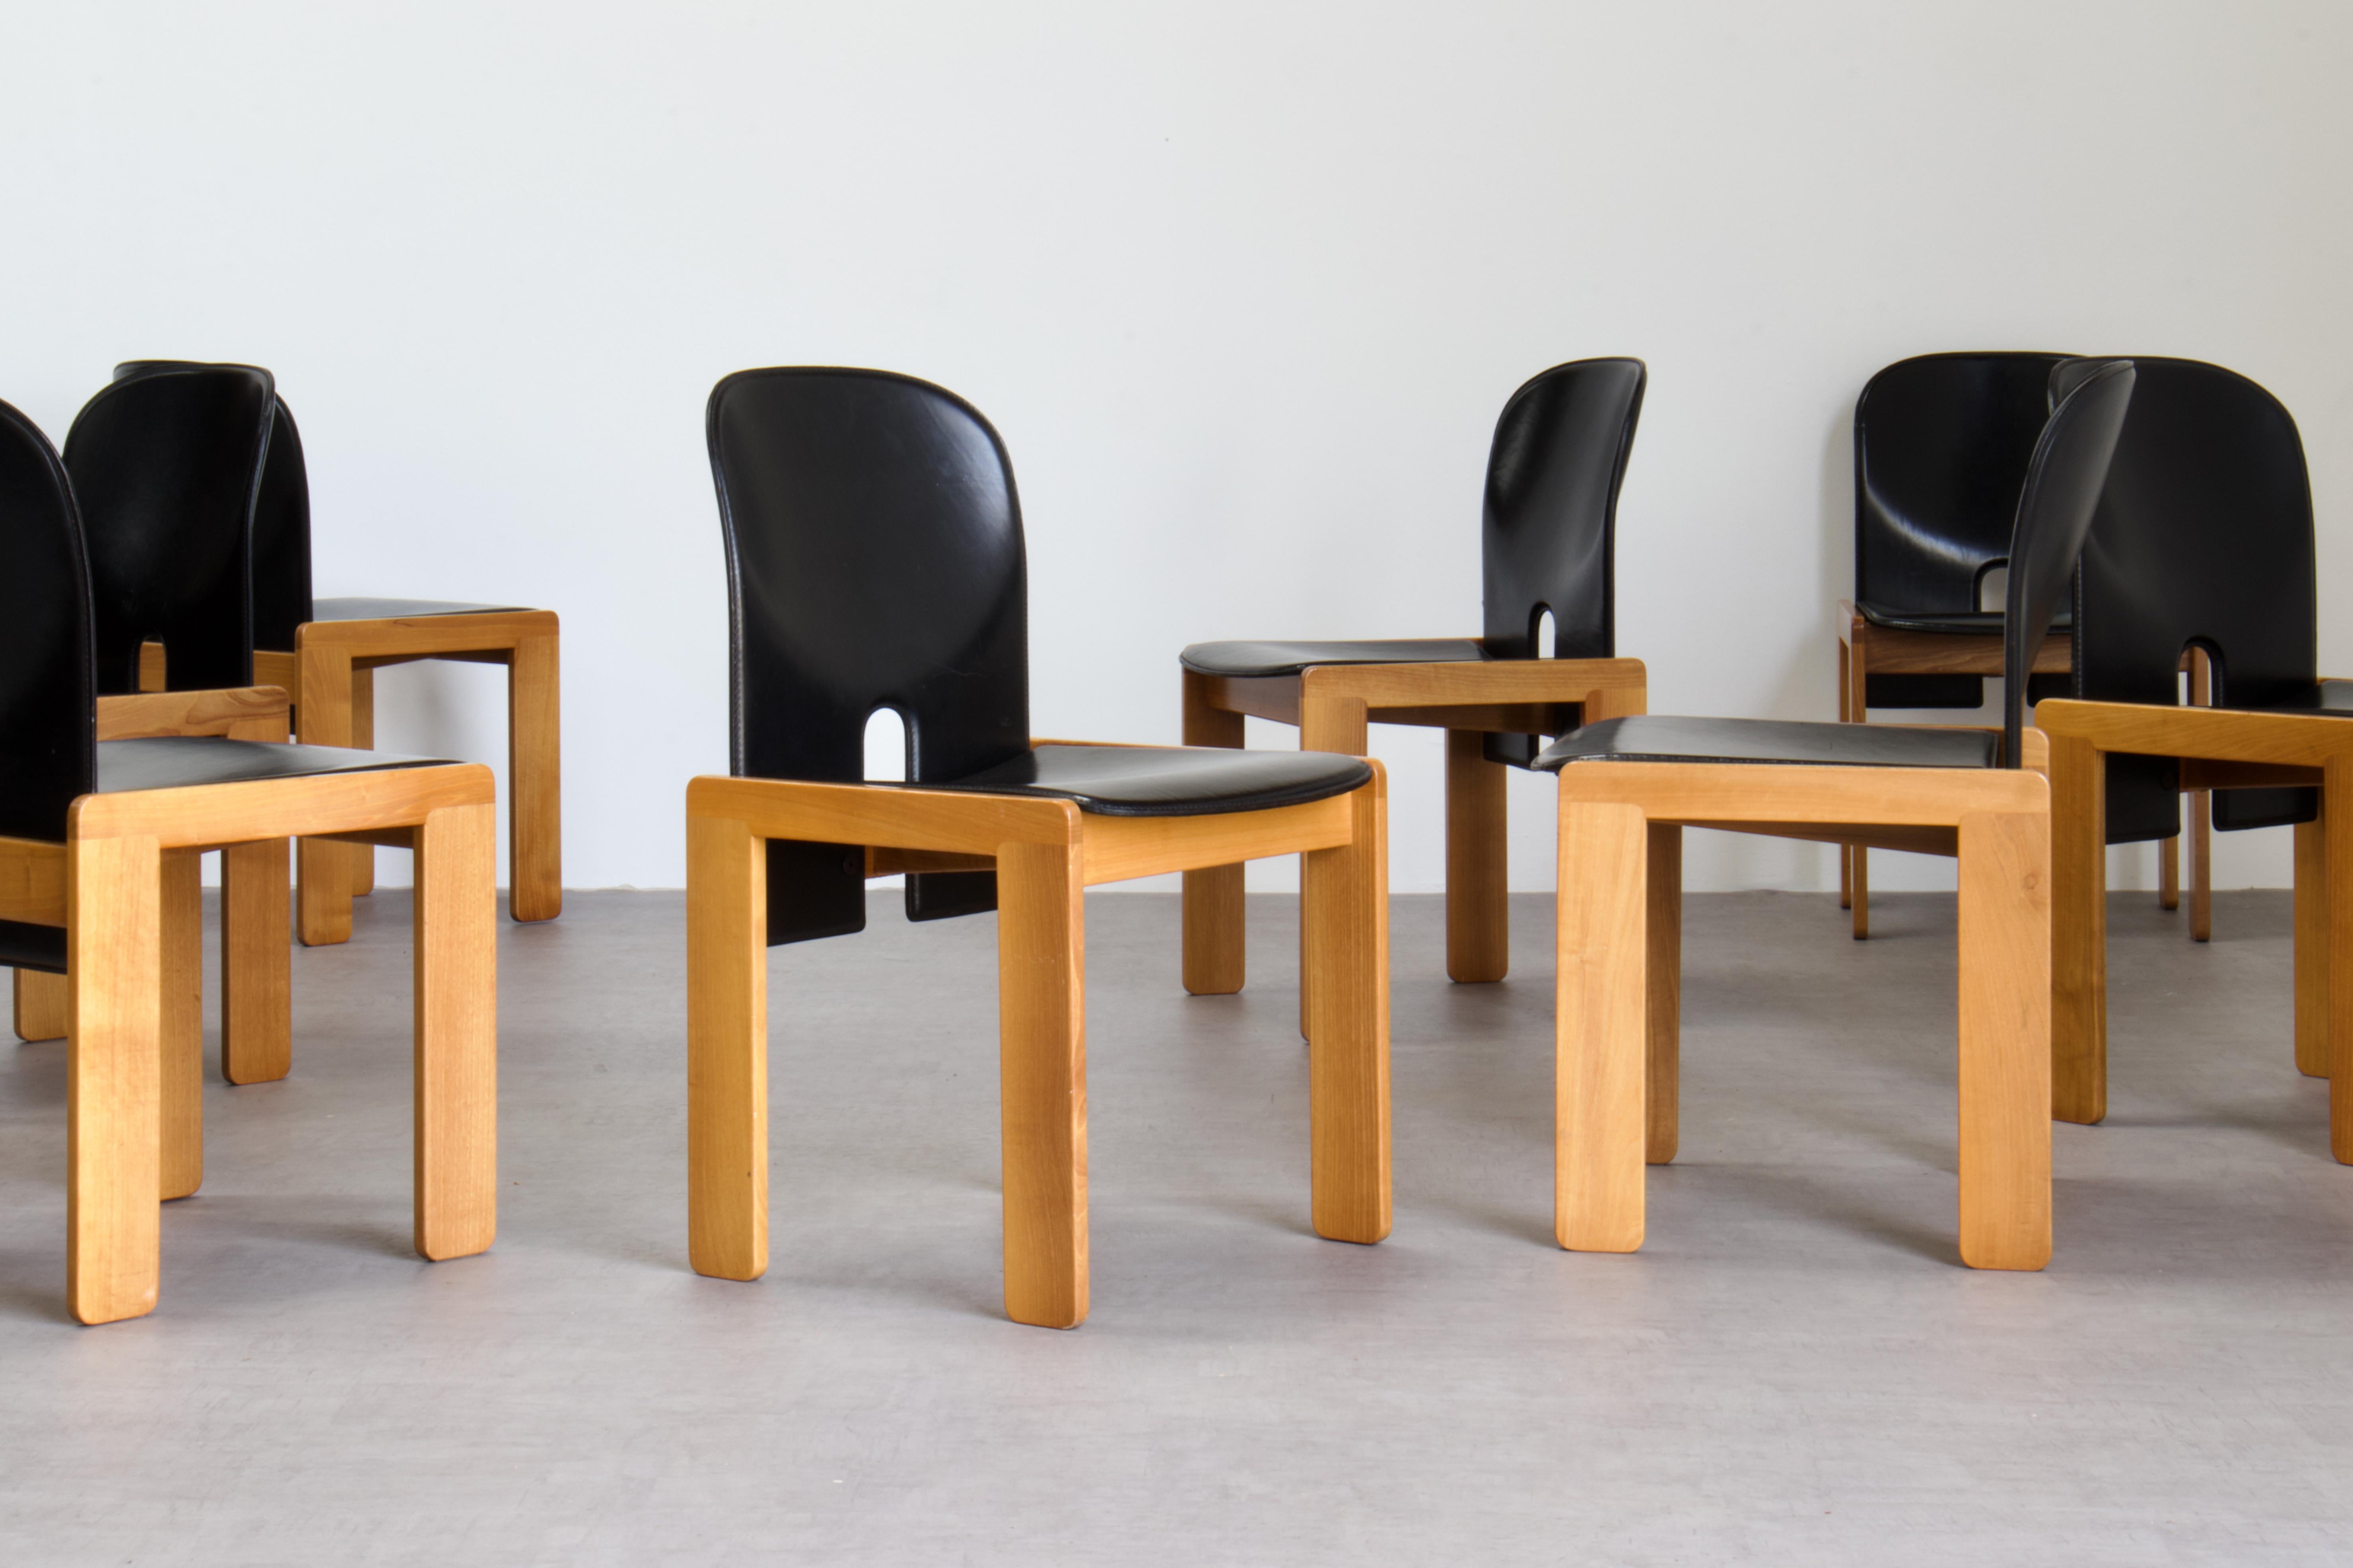 Satz von acht Esszimmerstühlen des Modells 121, entworfen von Afra und Tobia Scarpa und hergestellt von der italienischen Firma Cassina im Jahr 1967. Sie sind mit schwarzem Sattelleder gepolstert und haben eine Struktur aus lackiertem hellem Holz